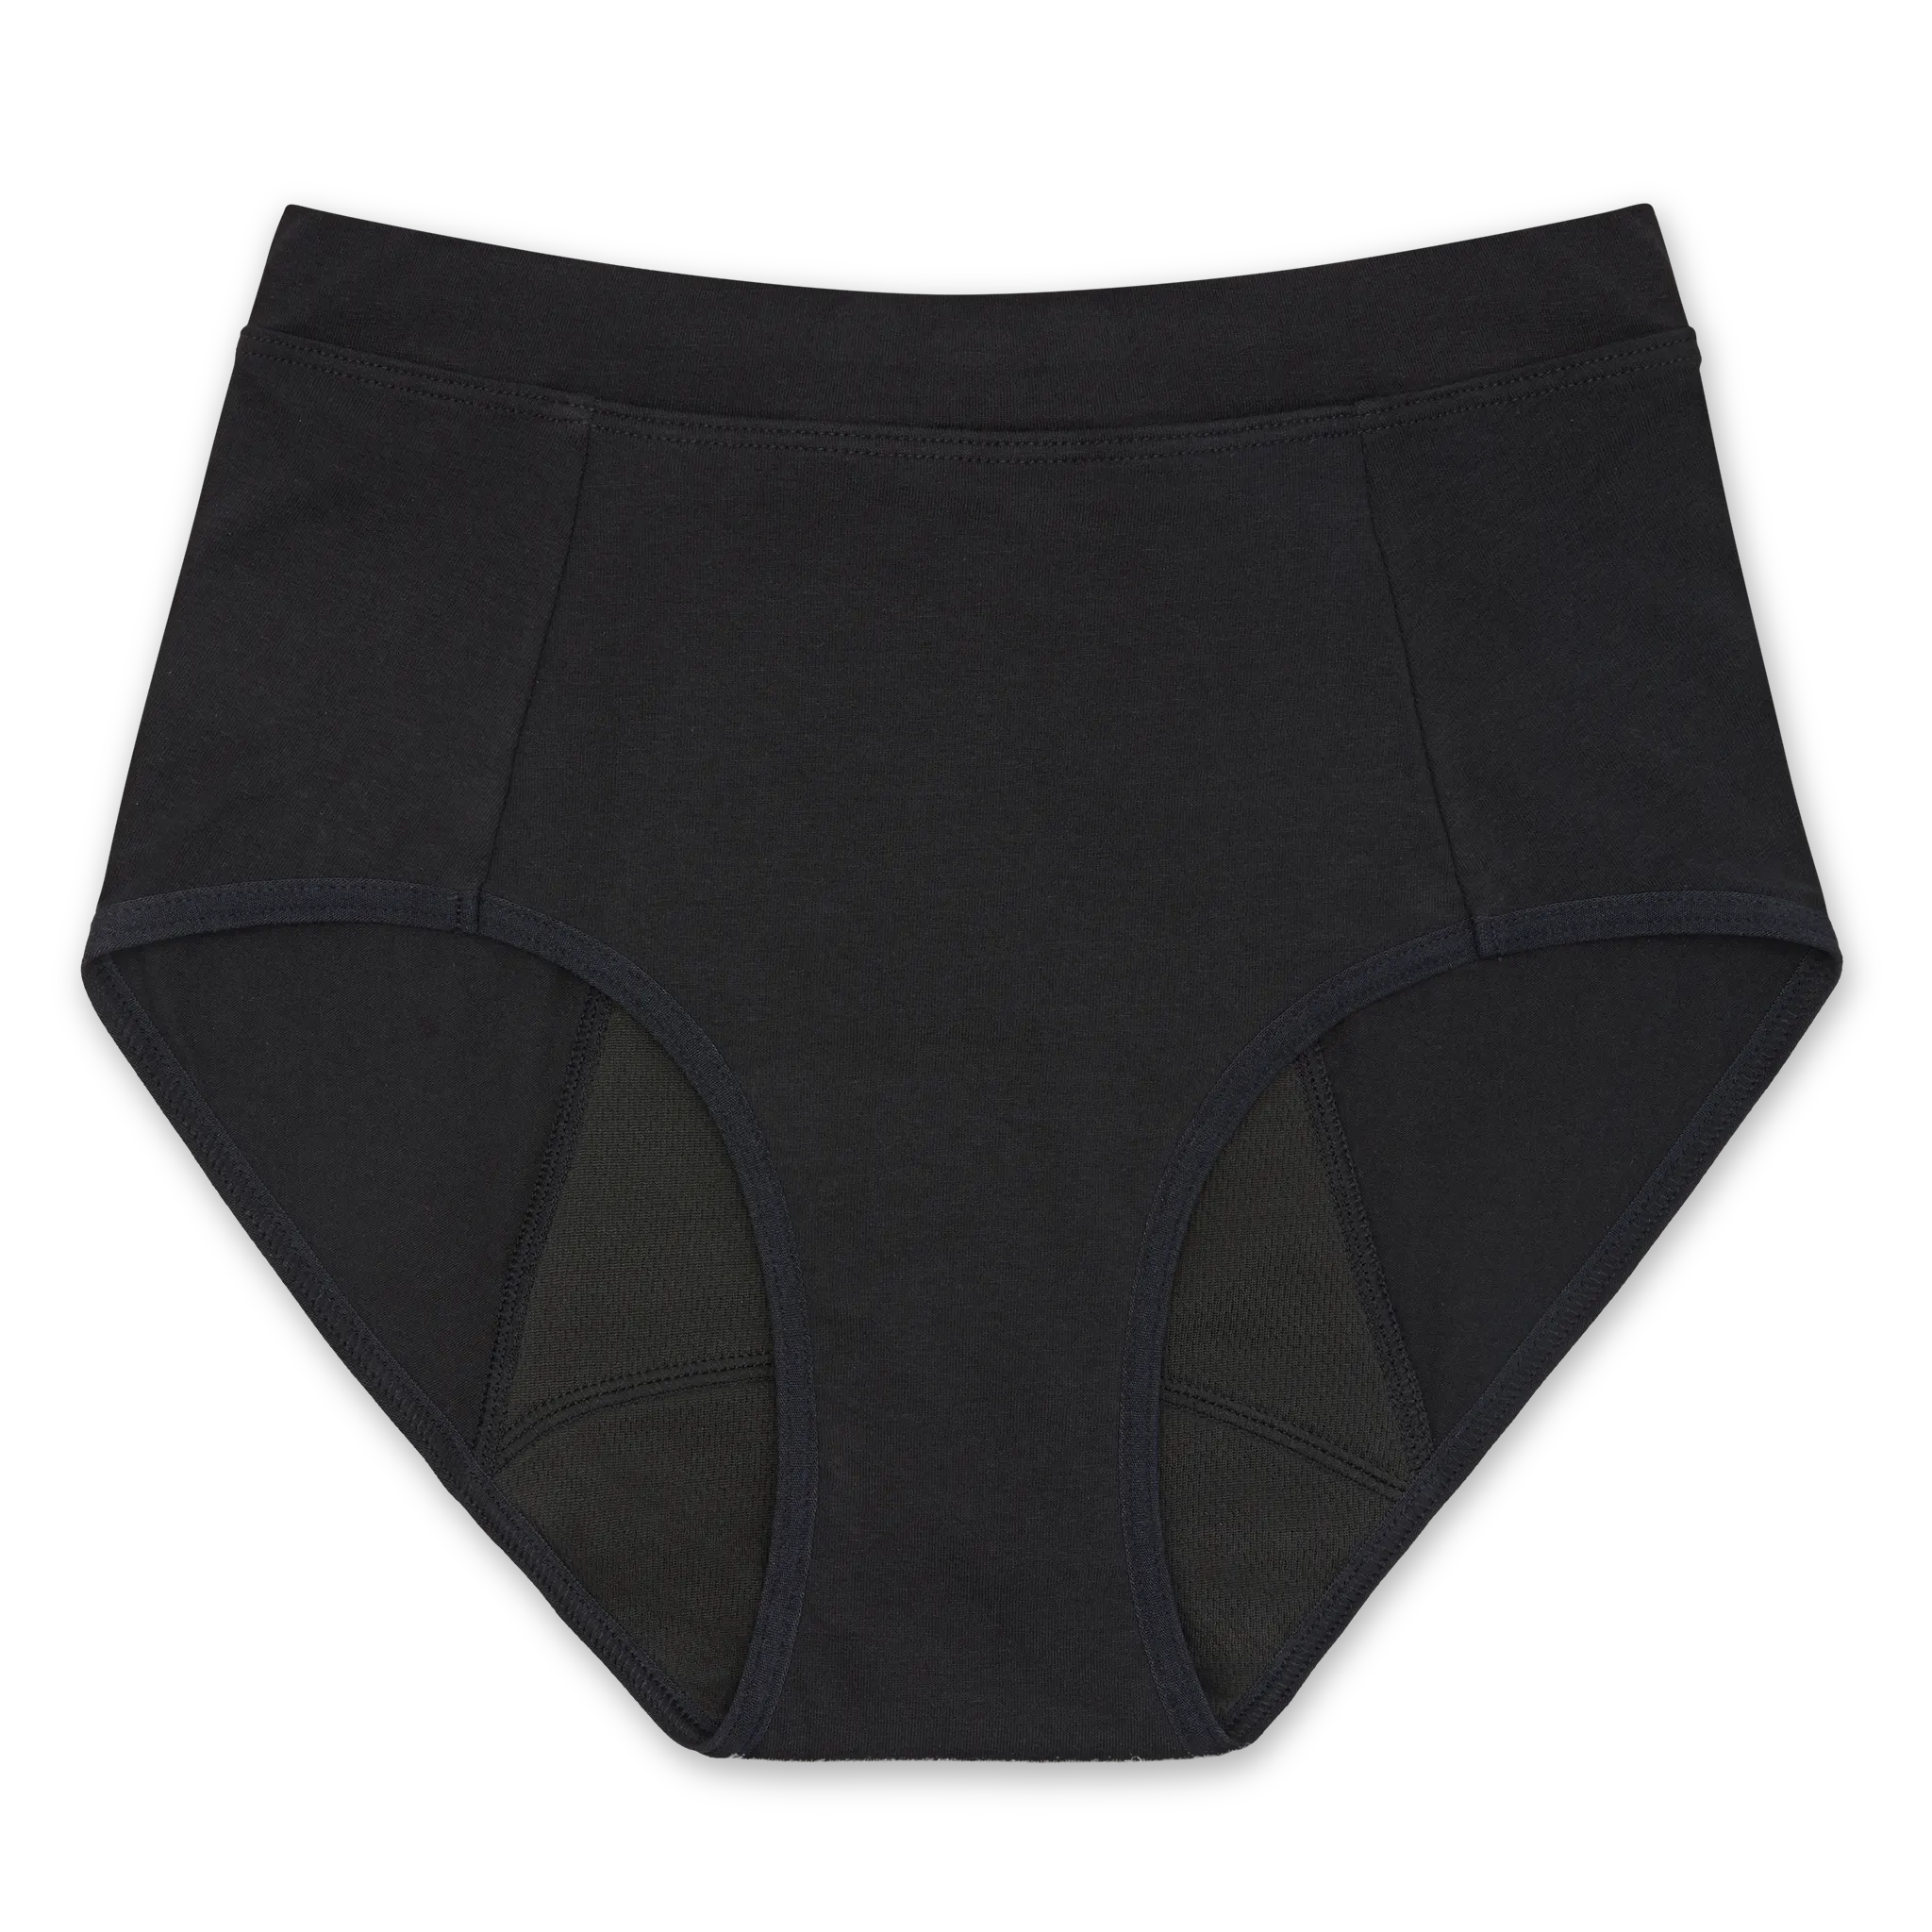 Women's Period Underwear Bundle, 4pc